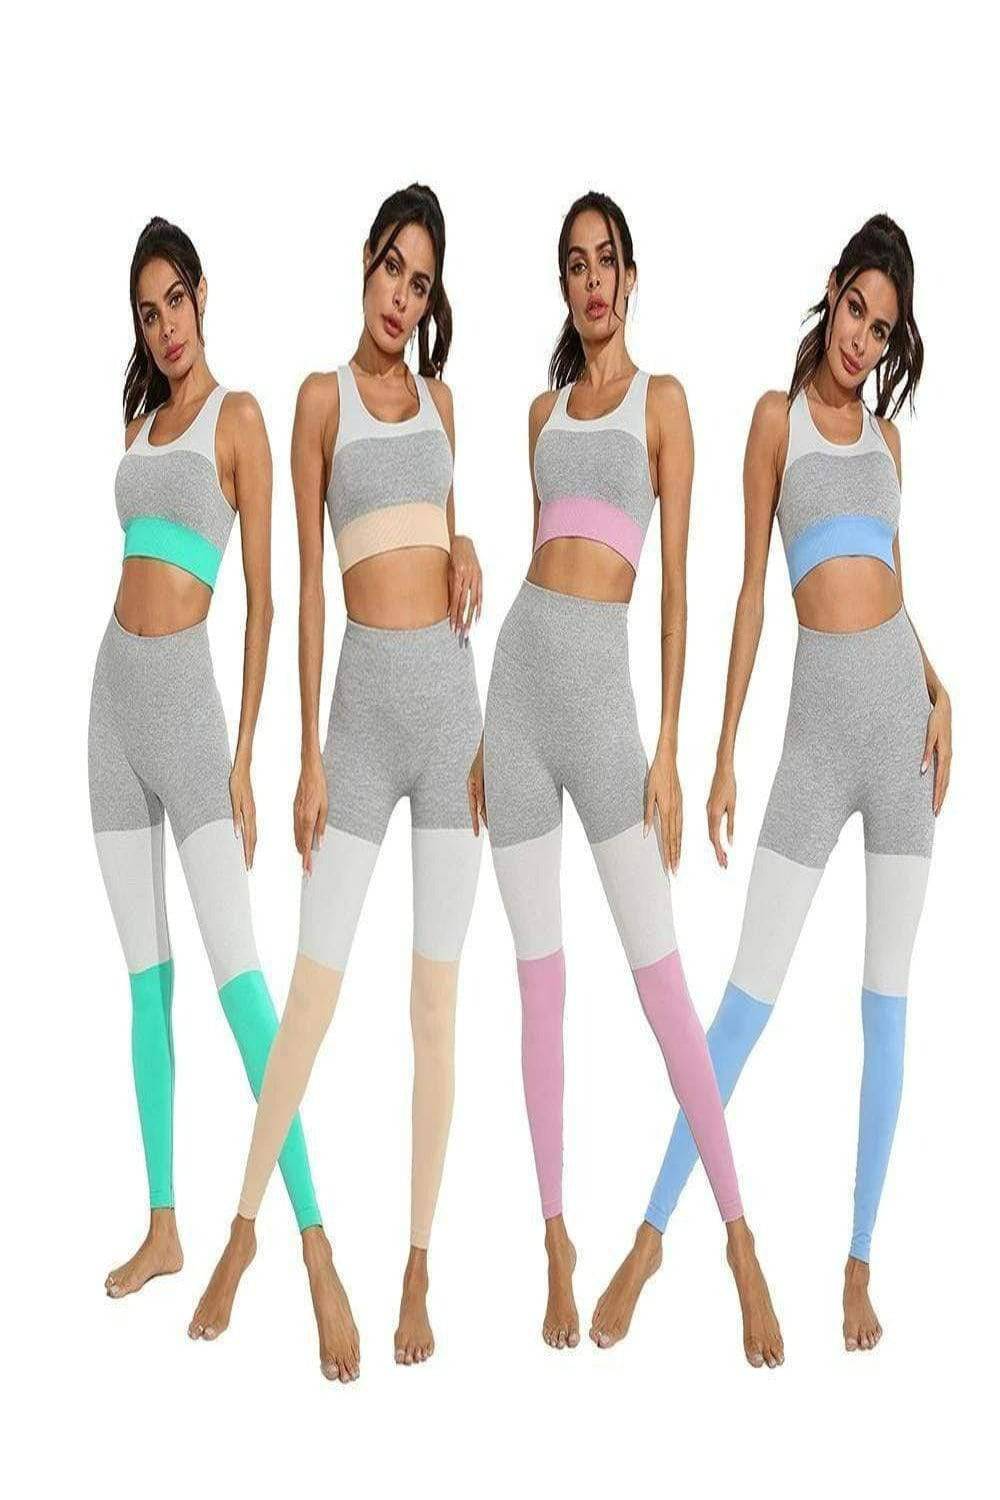 Squat Proof Patchwork Yoga Workout Set - Khaki - TGC Boutique - Activewear